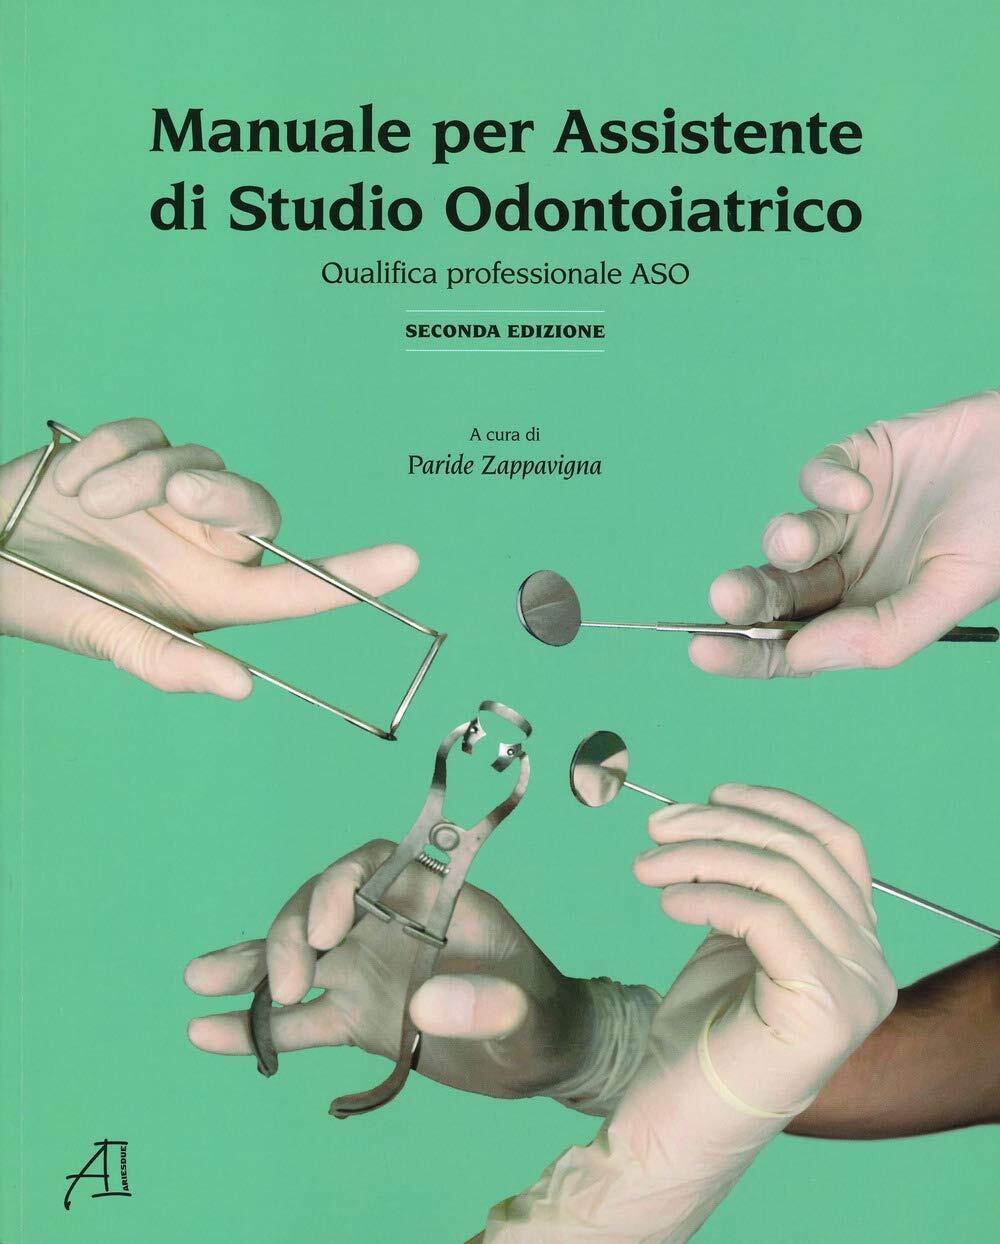 Manuale per assistente di studio odontoiatrico - P. Zappavigna - Ariesdue, 2020